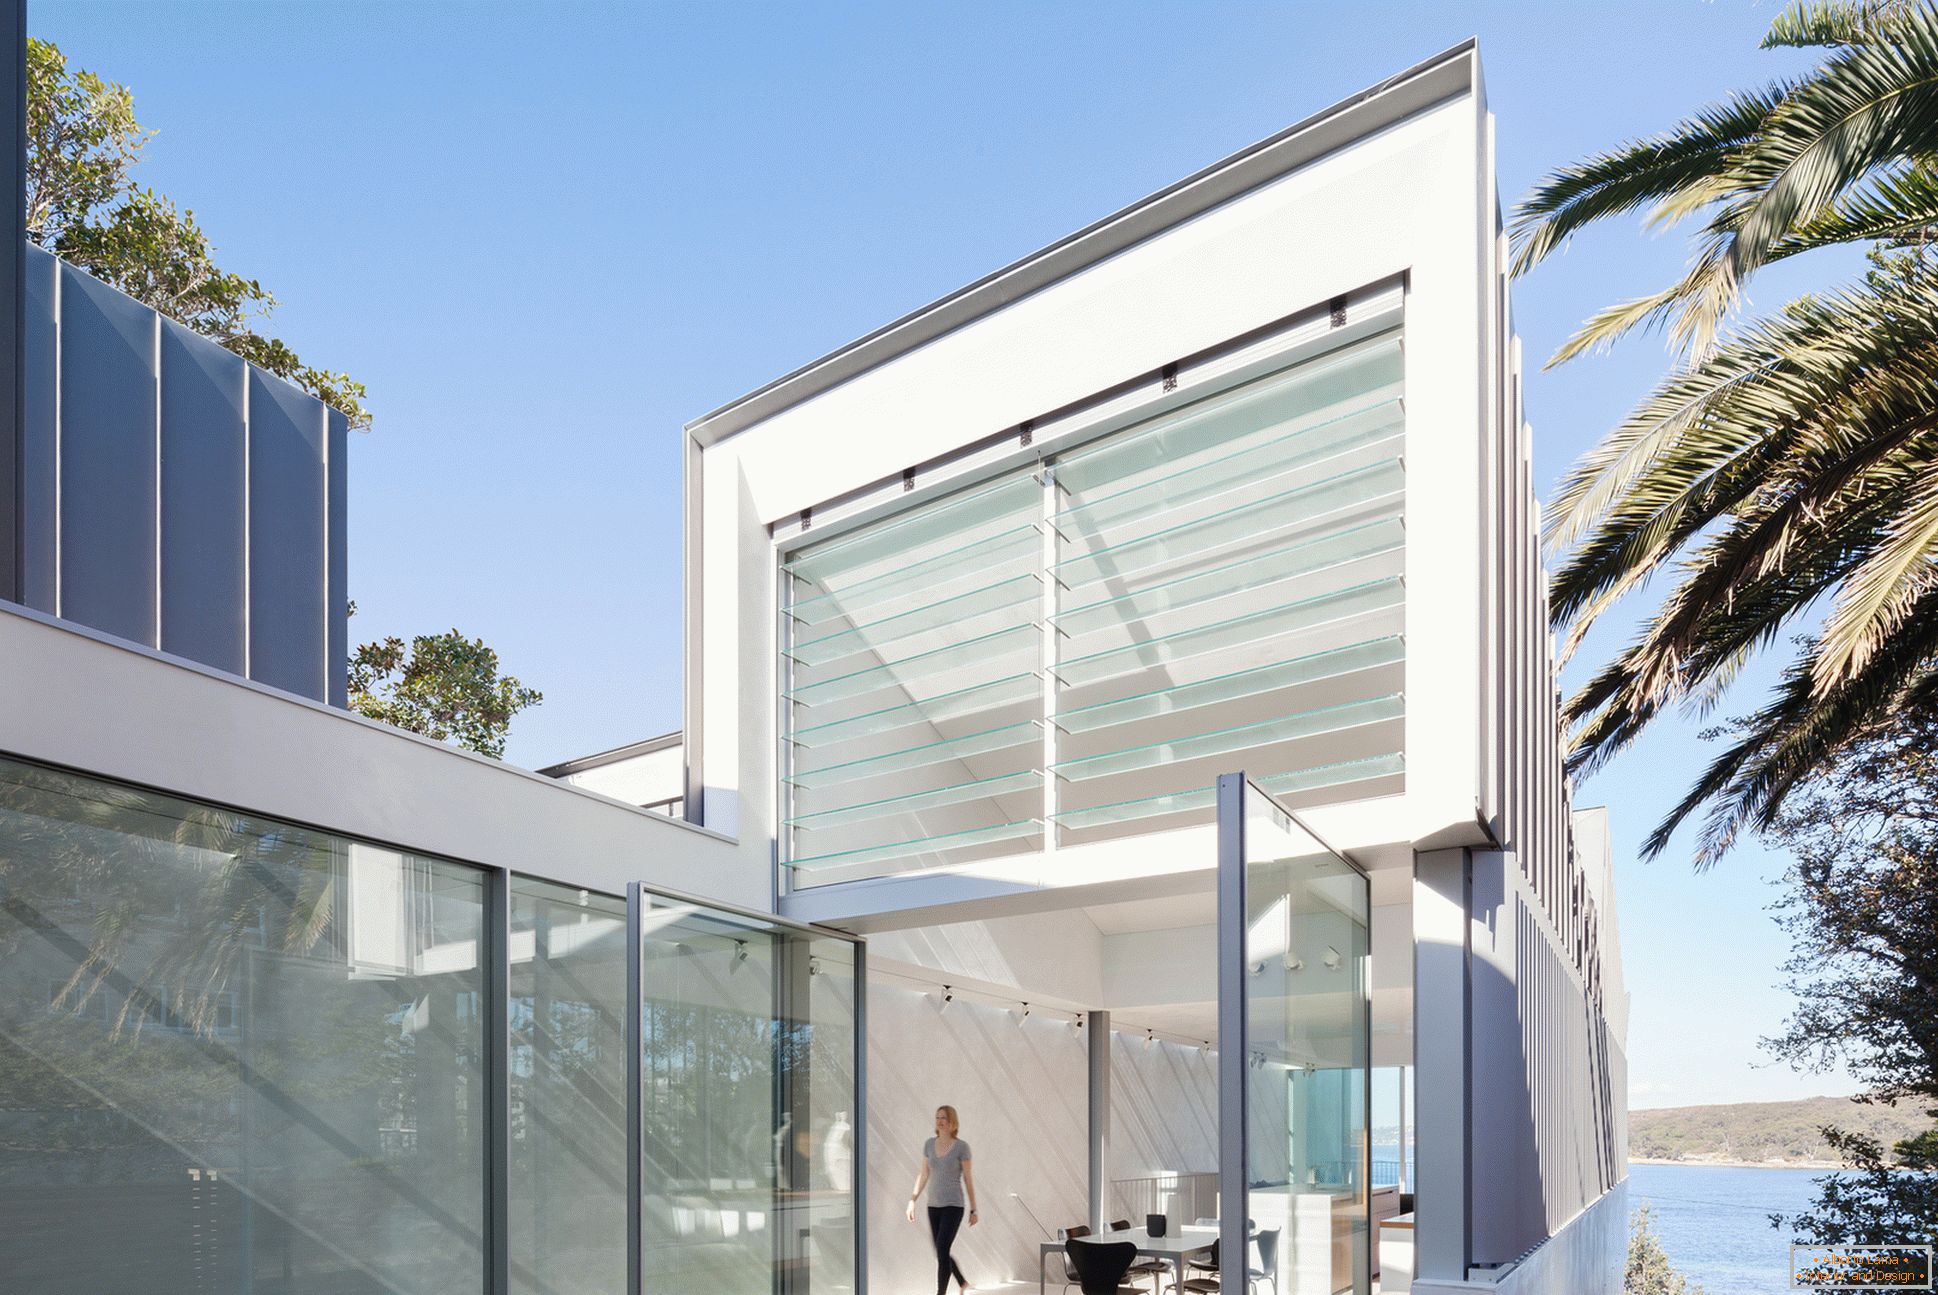 El proyecto de una casa estrecha de dos pisos en Australia